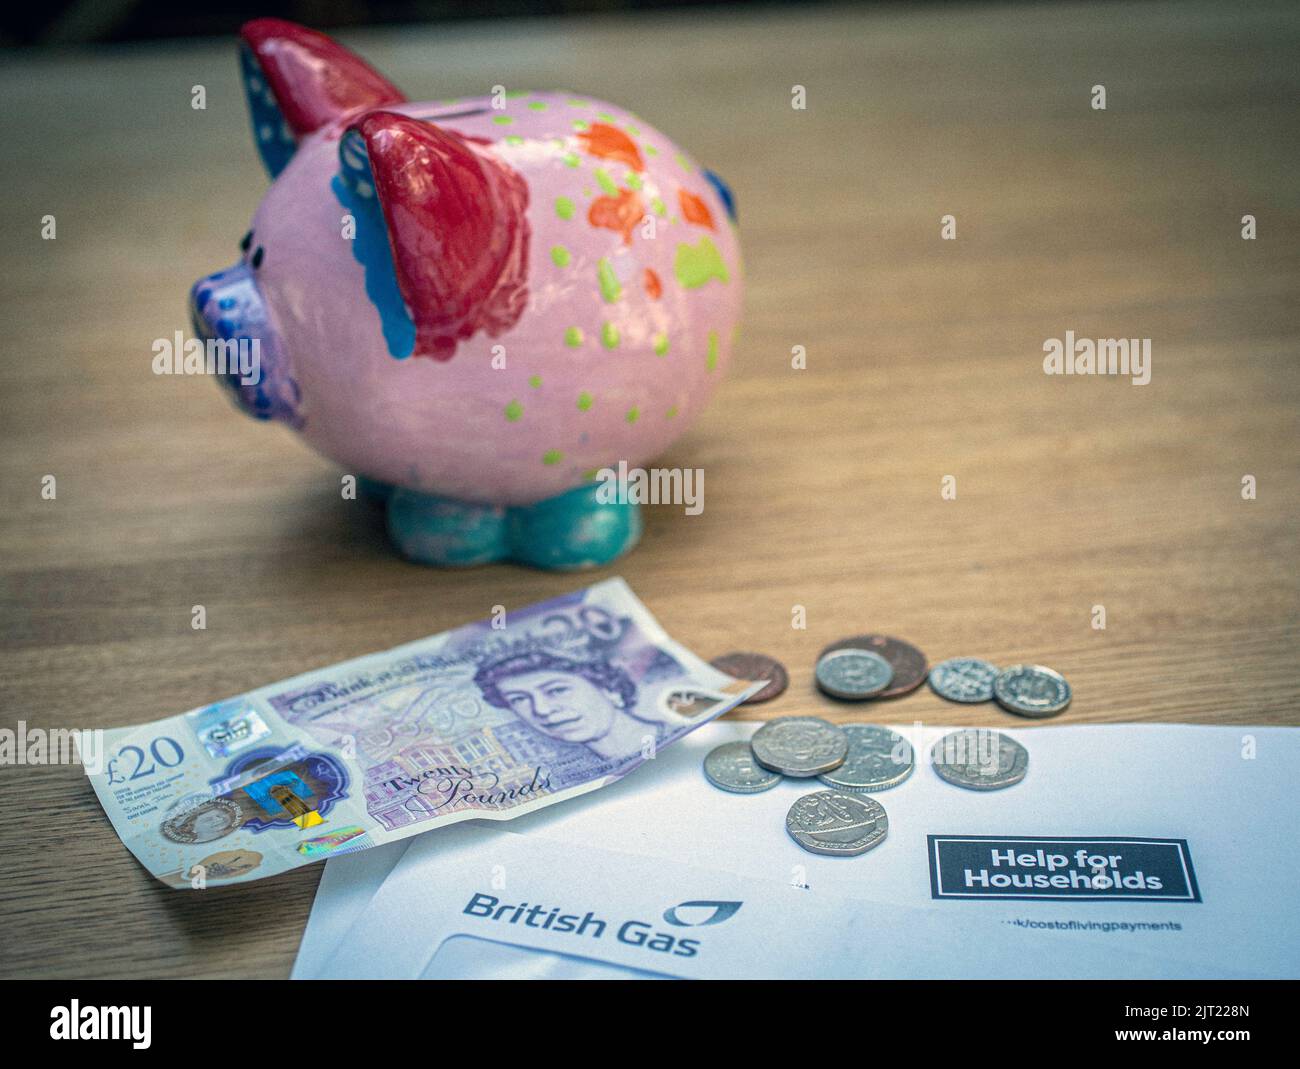 Nota británica de £20 y monedas en la carta del Gobierno de Su Majestad notificando la ayuda del Gobierno del Reino Unido a los hogares, Reino Unido Foto de stock